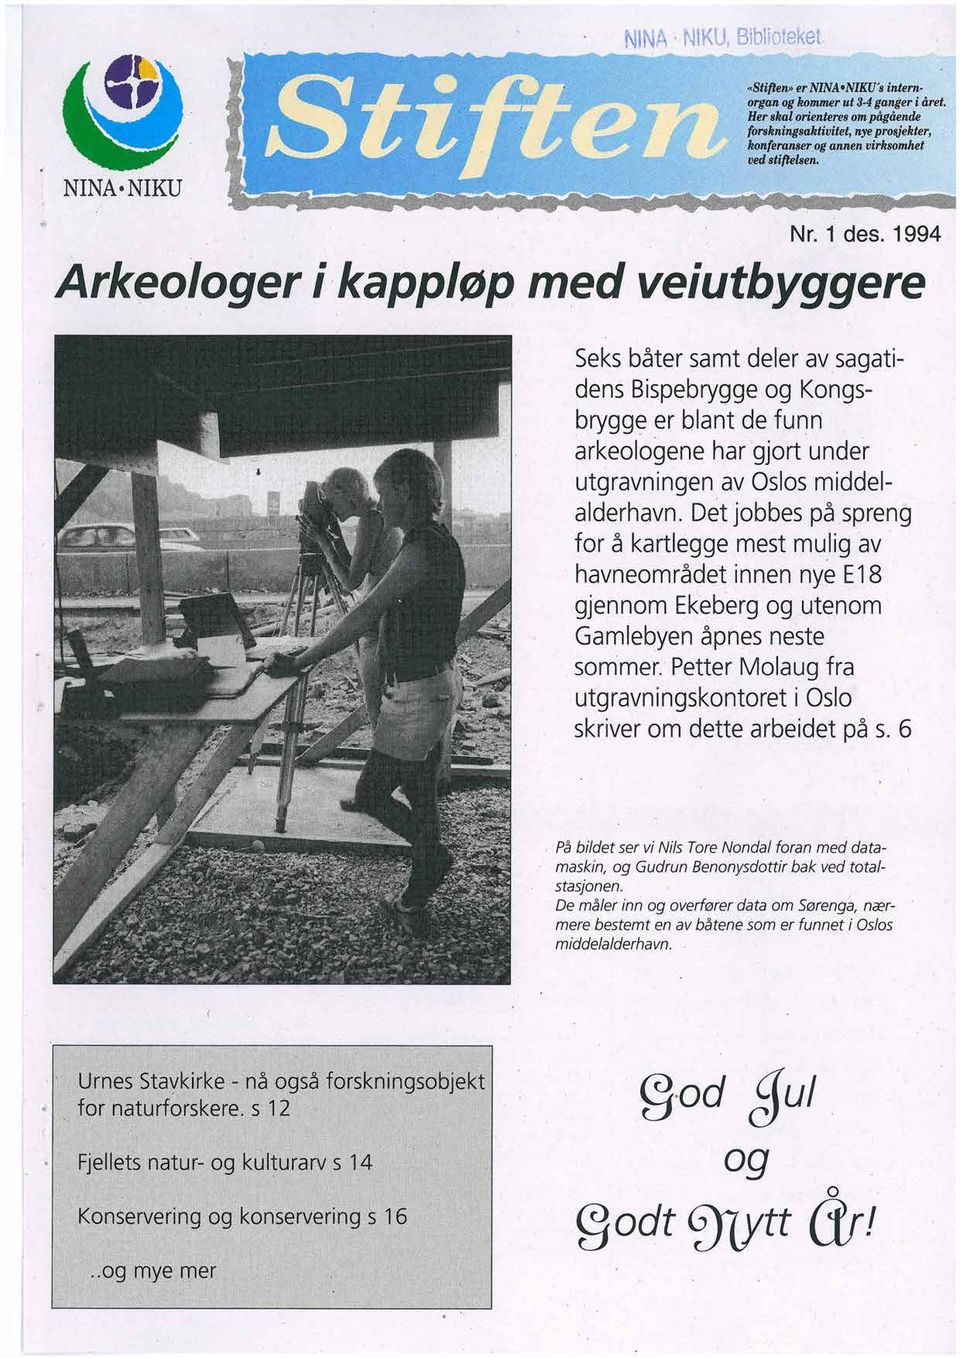 1994 Seks båter samt deler av sagatidens Bispebrygge og Kongsbrygge er blant de funn arkeologene har gjort under utgravningen av Oslos middelalderhavn.